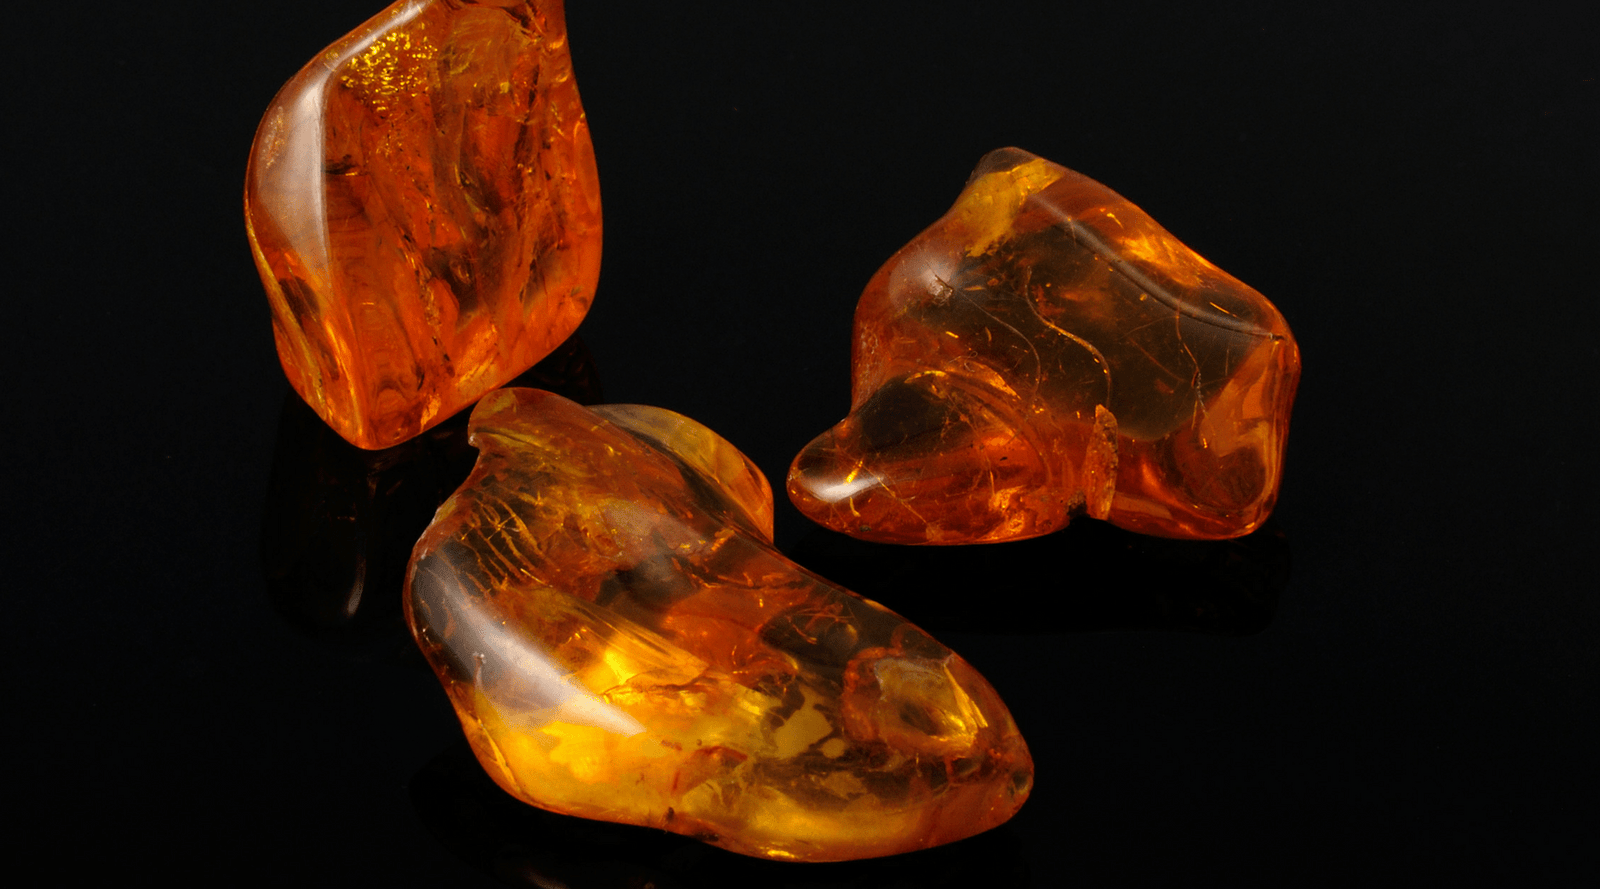 Best Orange Gemstones For Jewelry: Types, Qualities, and Price